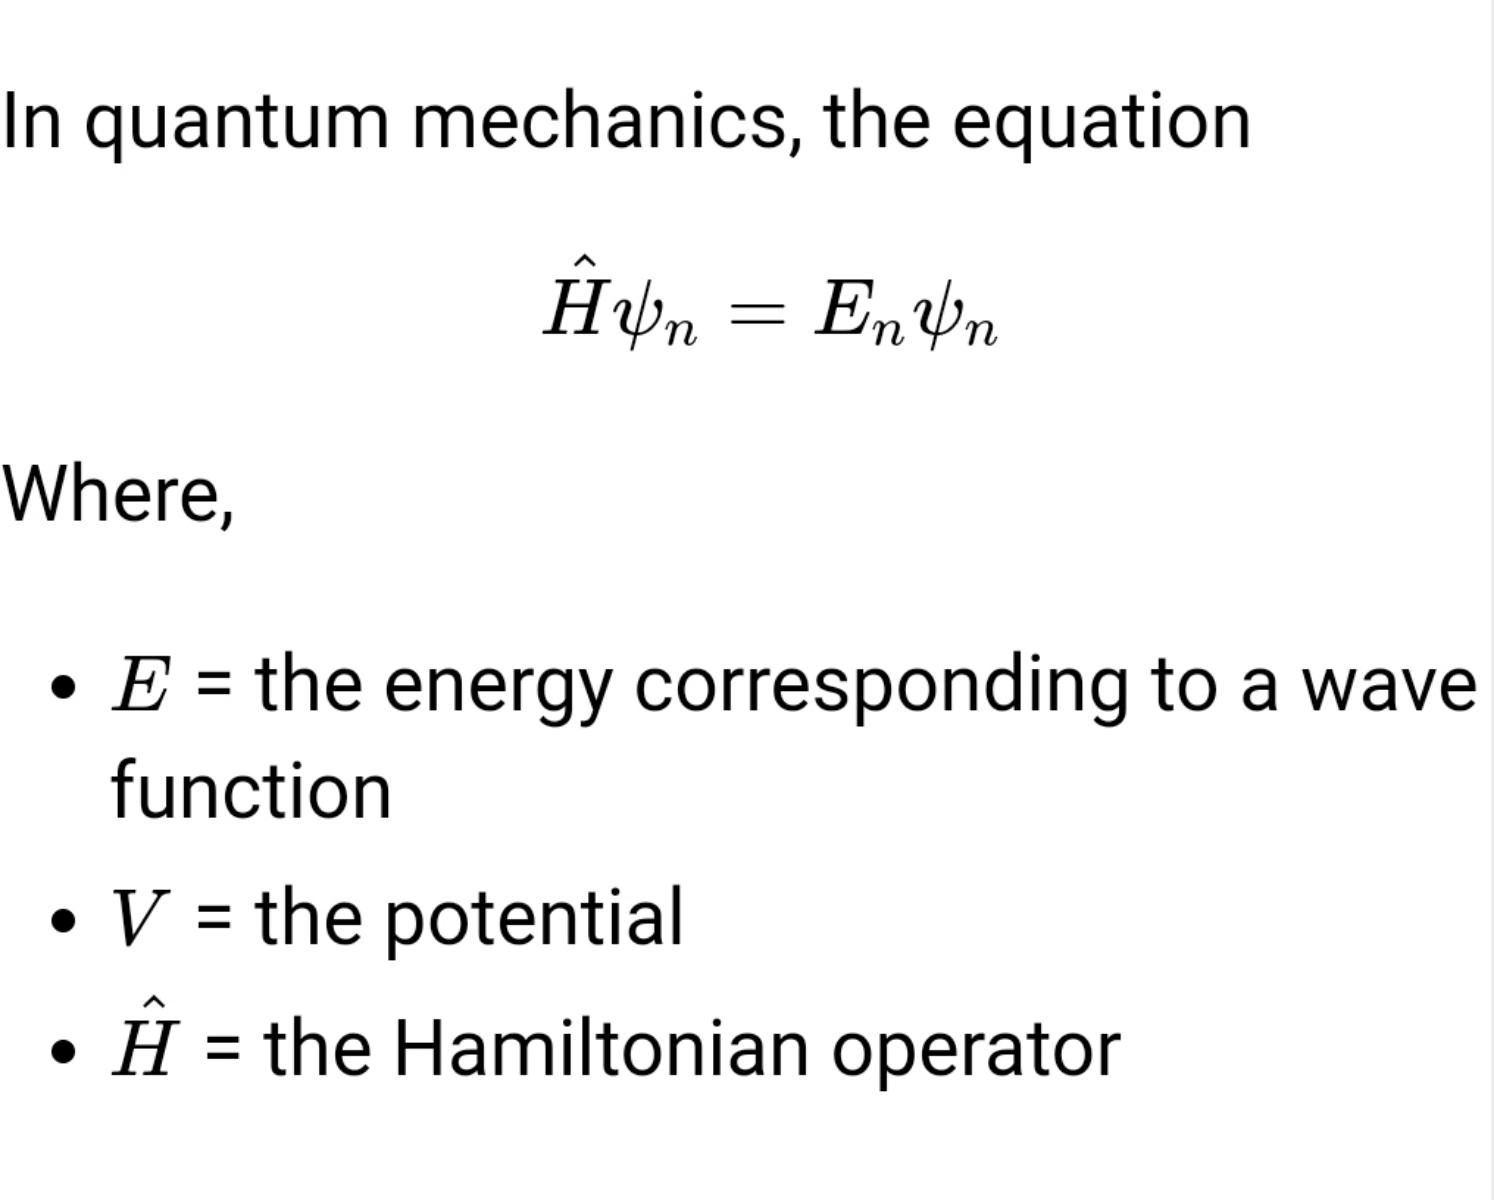 Quantum mechanics' equation